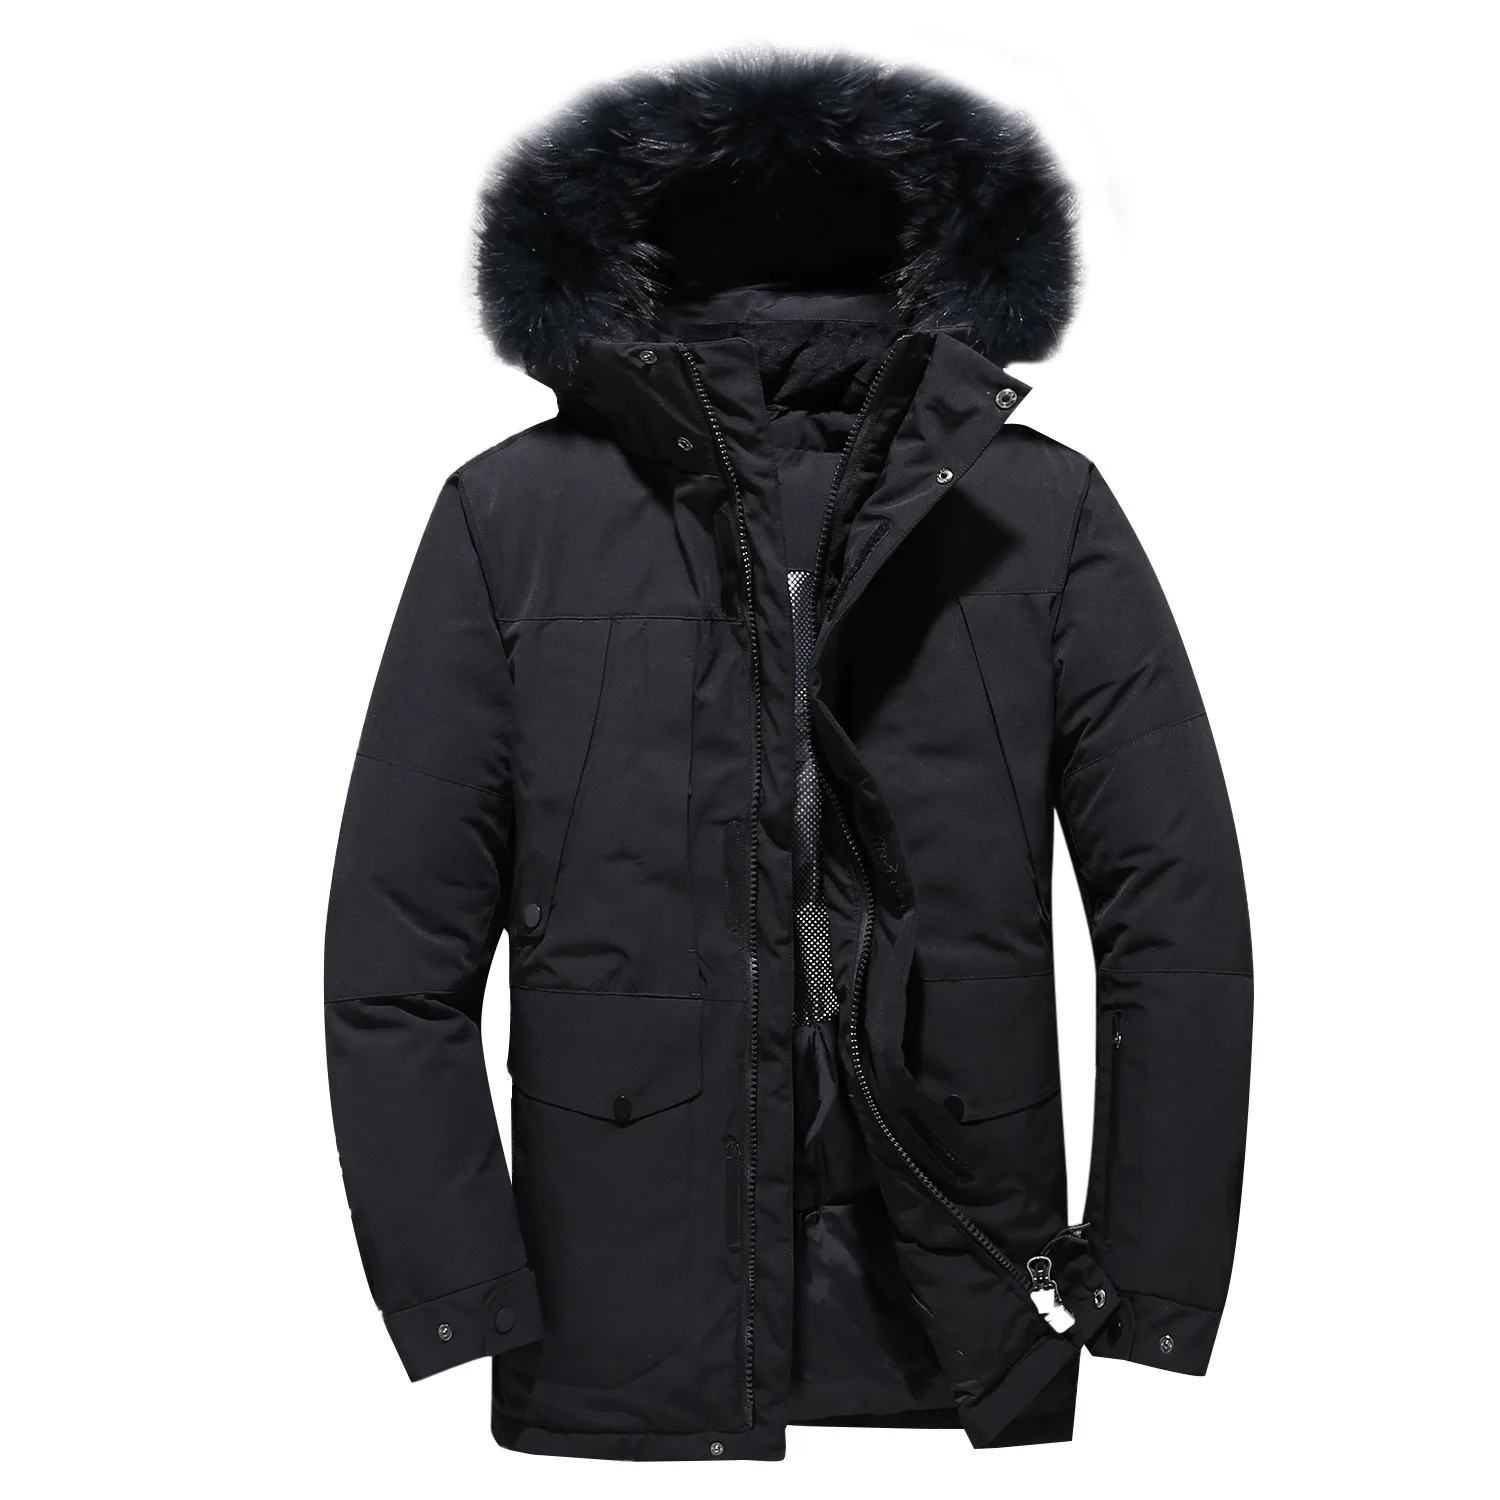 30 градусов пуховая куртка Для мужчин толстый зимний большой натуральный меховой воротник Теплая парка Водонепроницаемый ветрозащитная Лыжная куртка